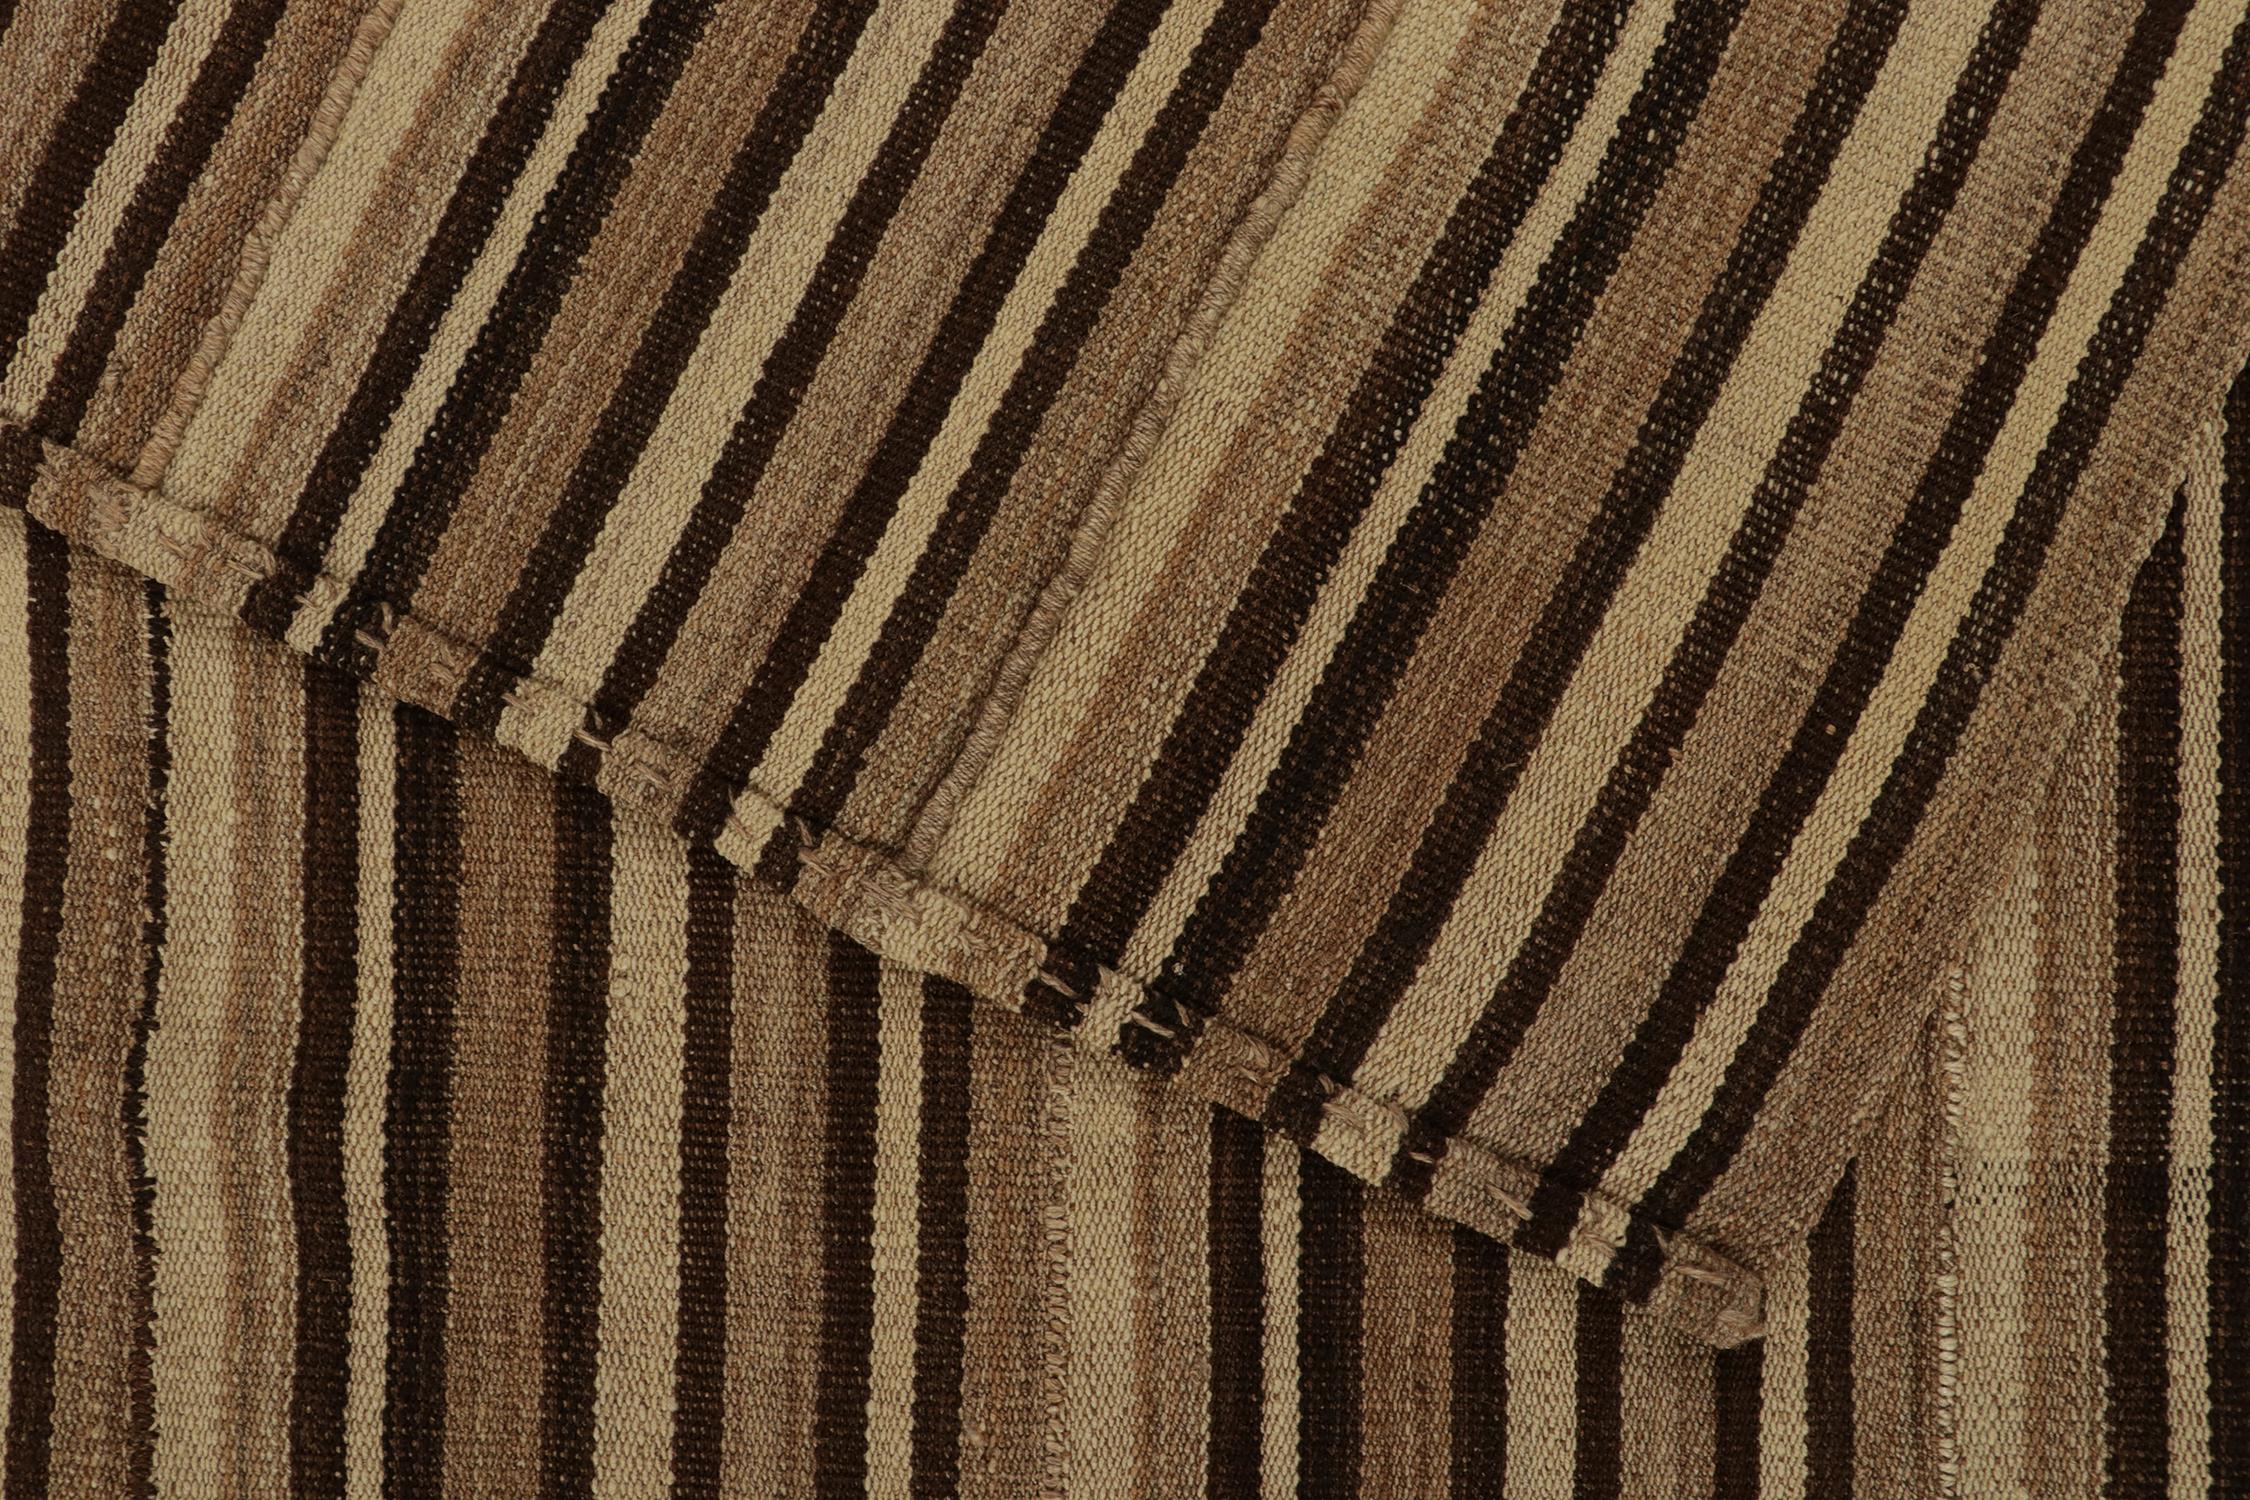 Mid-20th Century Vintage Bidjar Persian Kilim Rug in Beige-Brown Stripes by Rug & Kilim For Sale